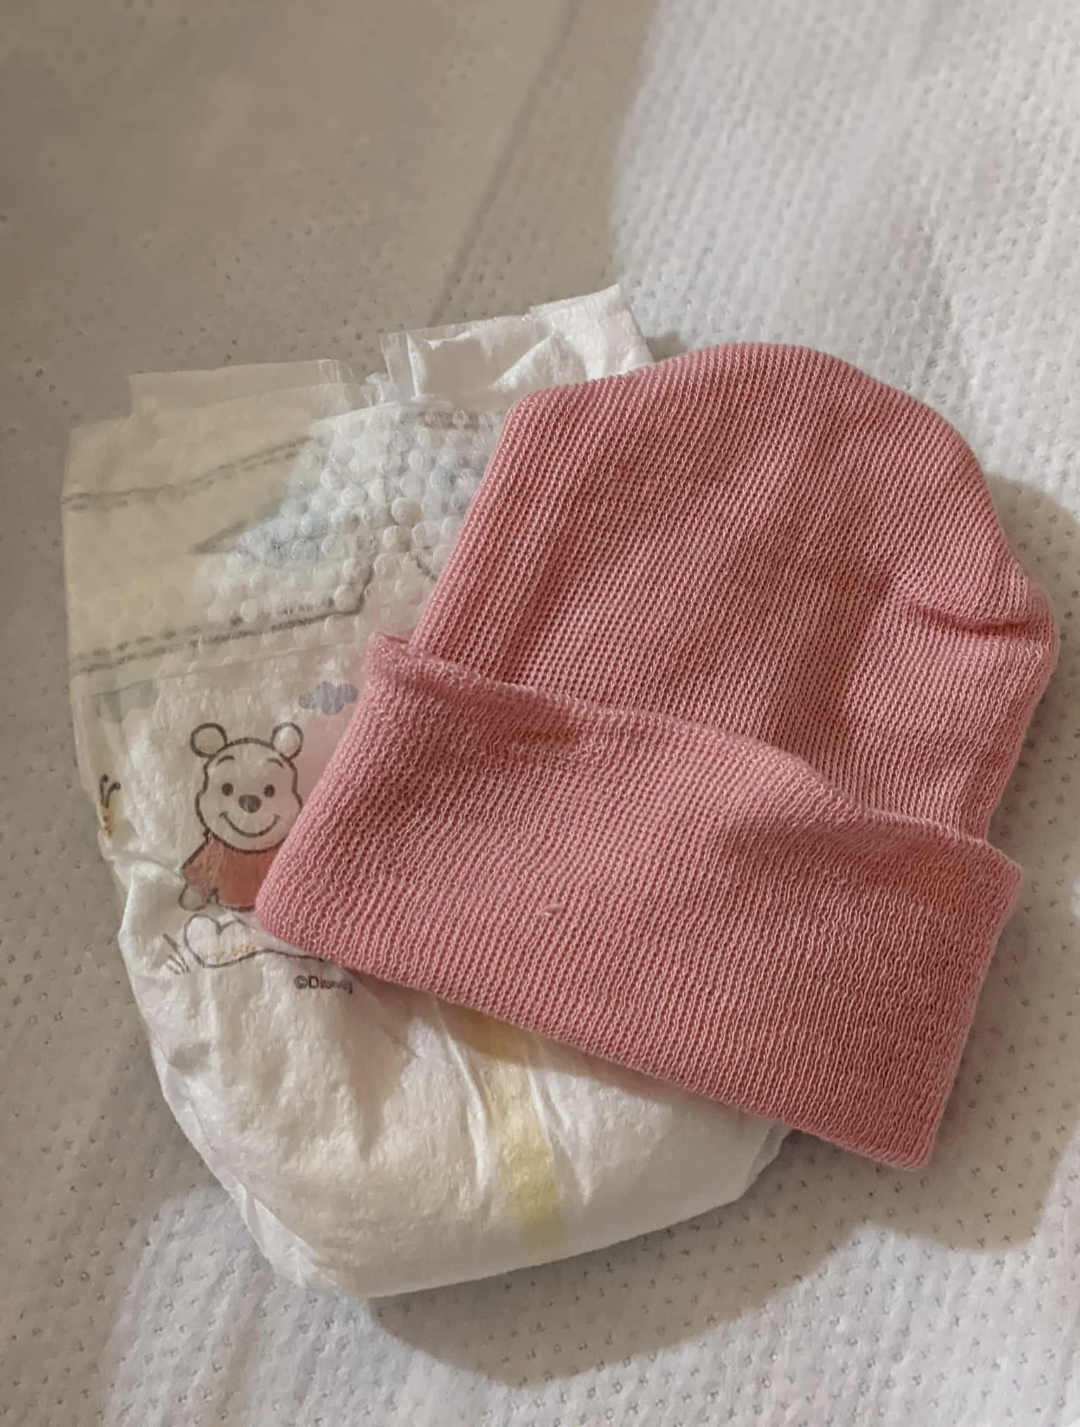 A pink newborn hat and diaper